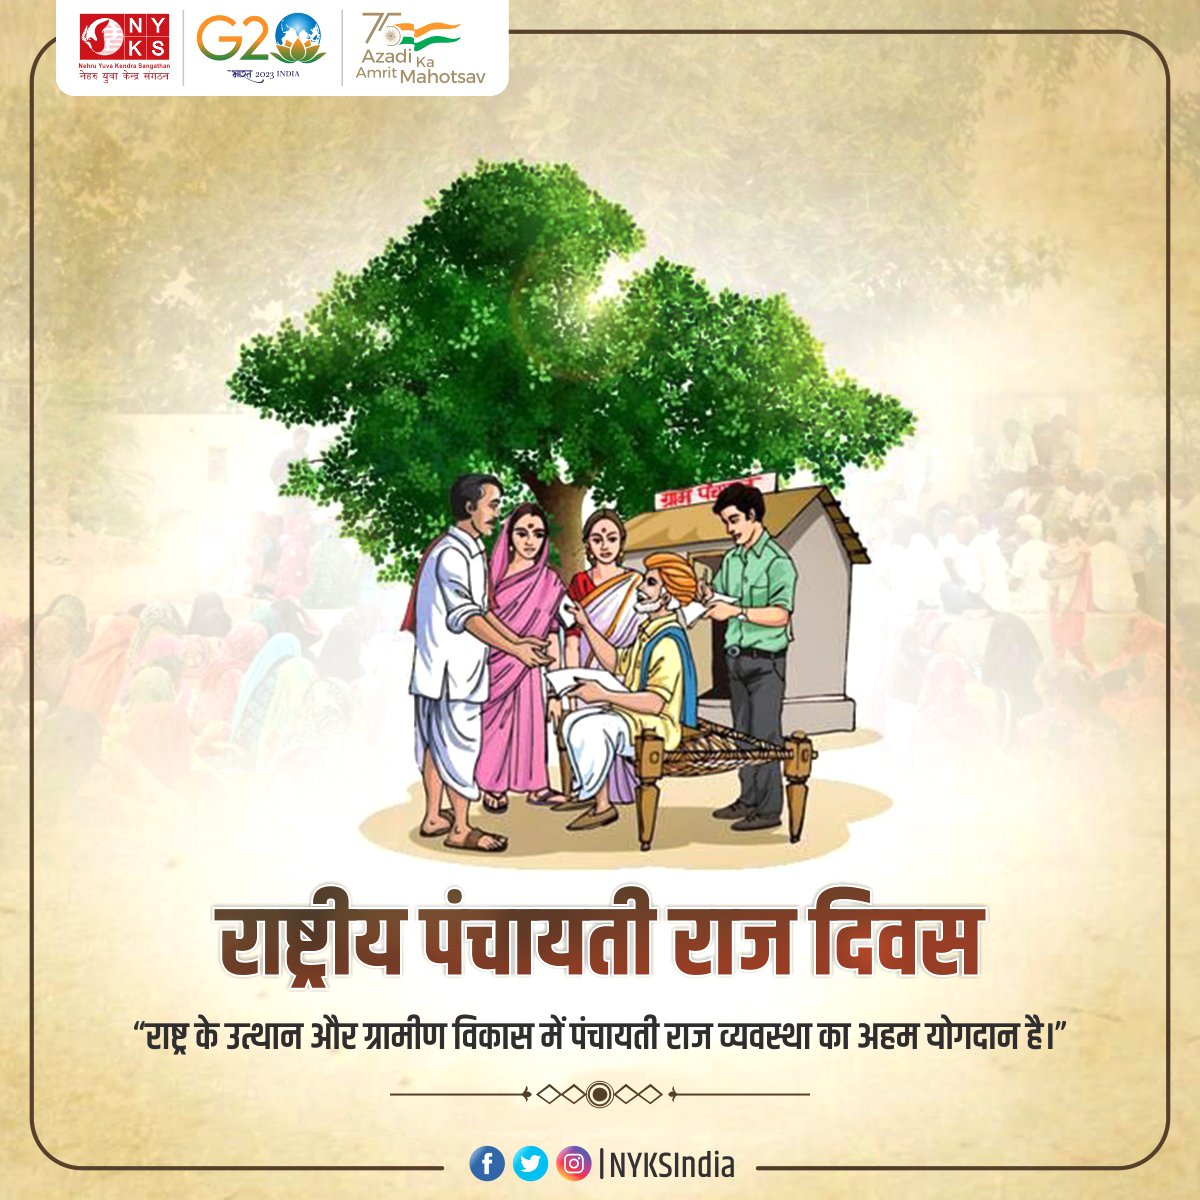 आज का दिन भारत के ग्रामीण क्षेत्रों में विकास की गति बनाए रखने के संकल्प को समर्पित है। 
आप सभी को राष्ट्रीय पंचायती राज दिवस की हार्दिक शुभकामनाएं। 

#PanchayatiRajDiwas #PanchayatiRajDay #राष्ट्रीय_पंचायतीराज_दिवस